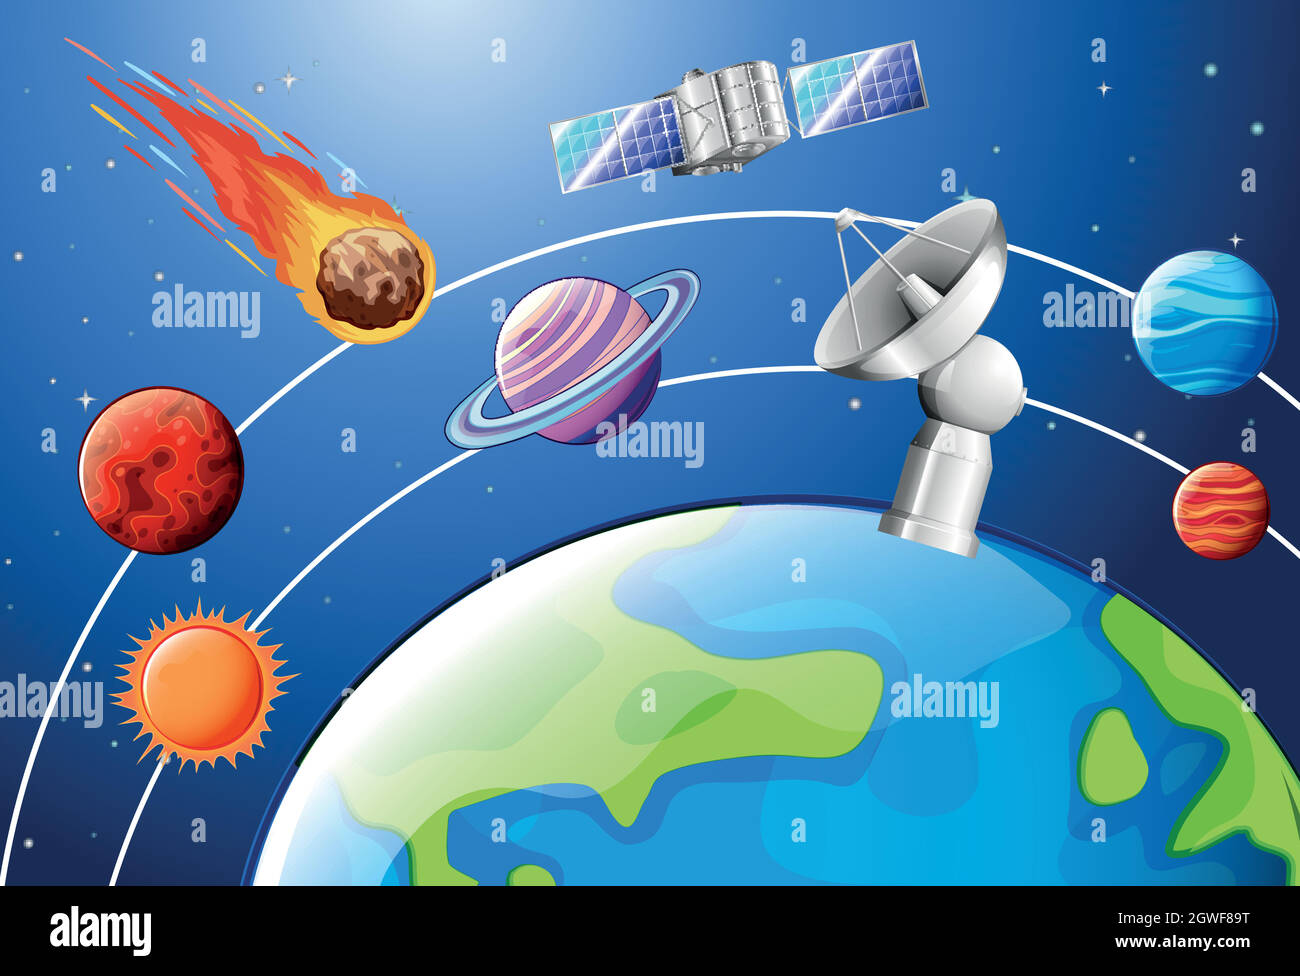 Astronomie Poster Design mit Planeten und Satelliten Stock Vektor